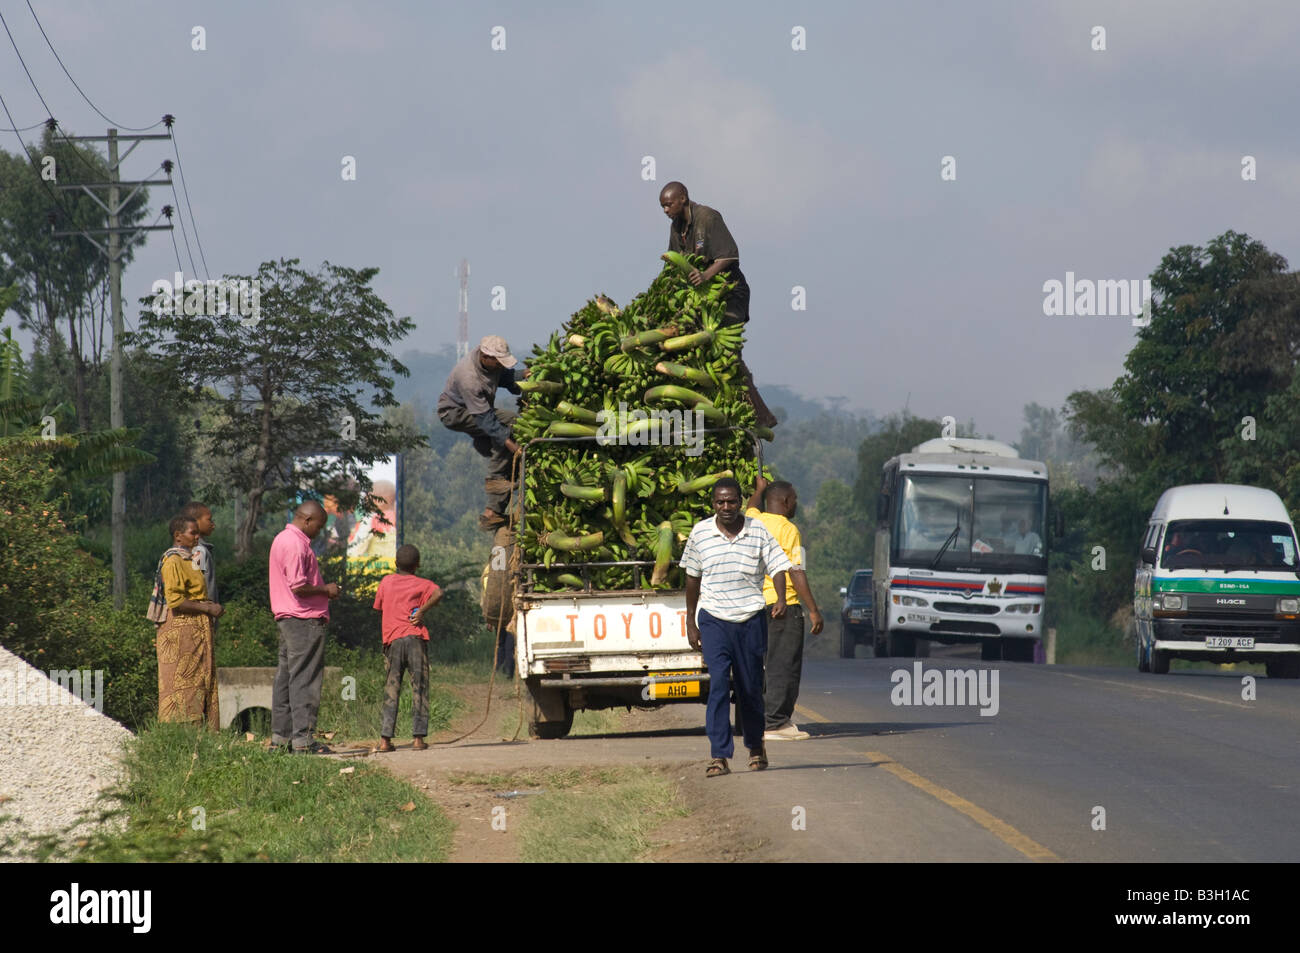 Los plátanos machos cargados en una camioneta, Arusha, Tanzania Foto de stock